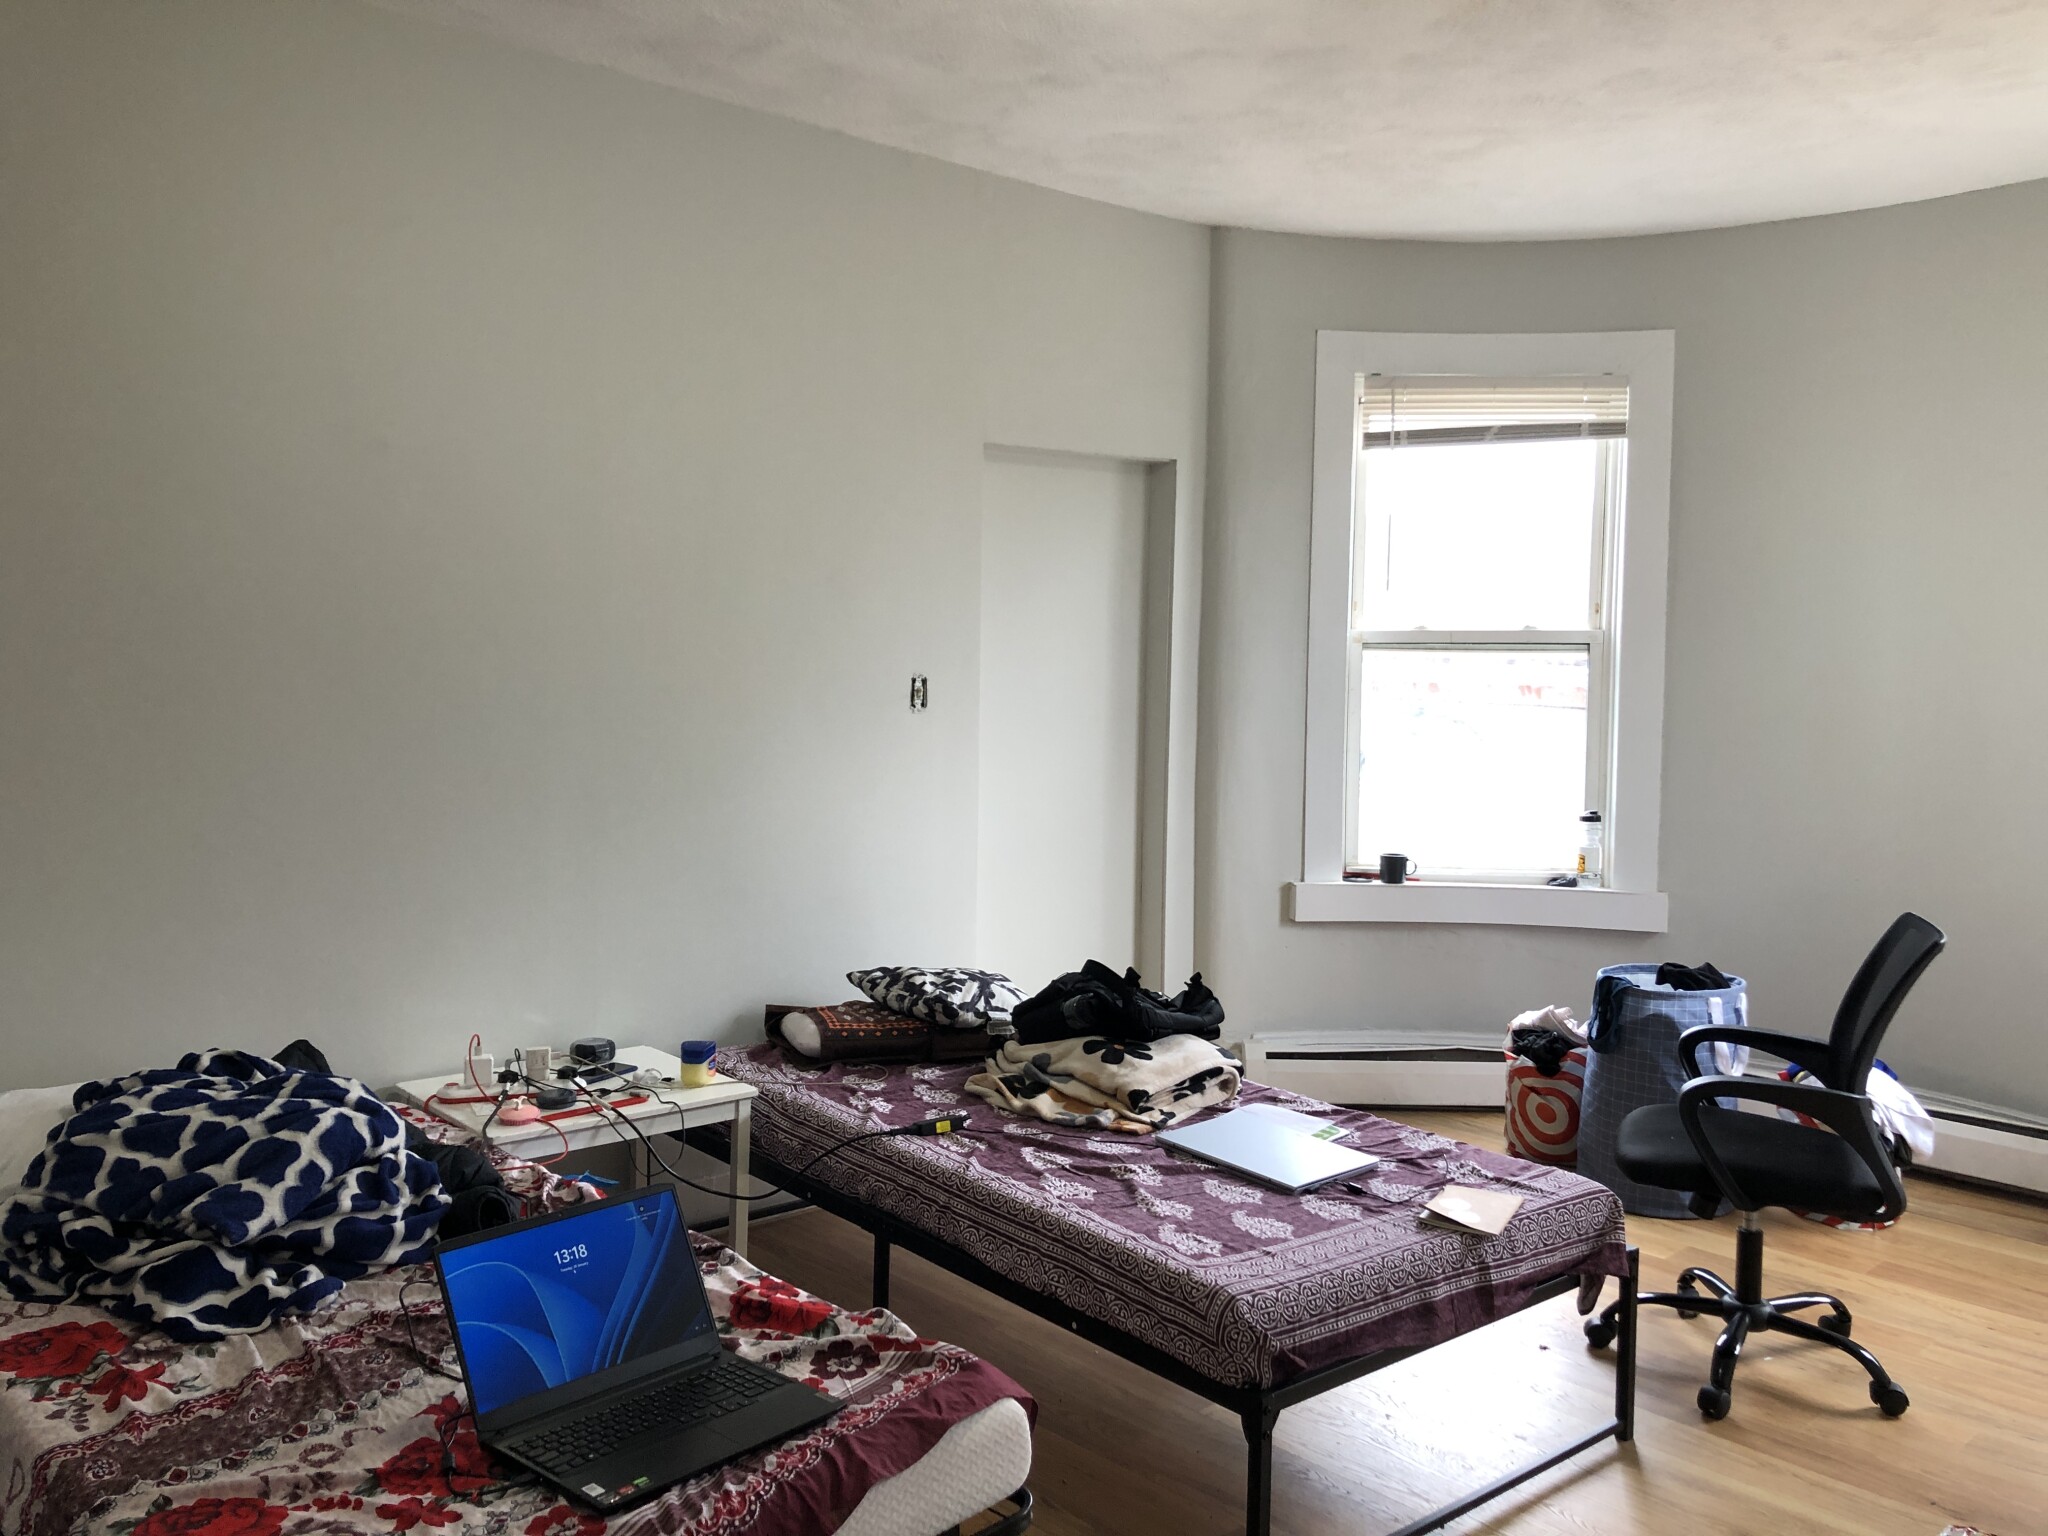 Photos of apartment on Shawmut Ave.,Boston MA 02119